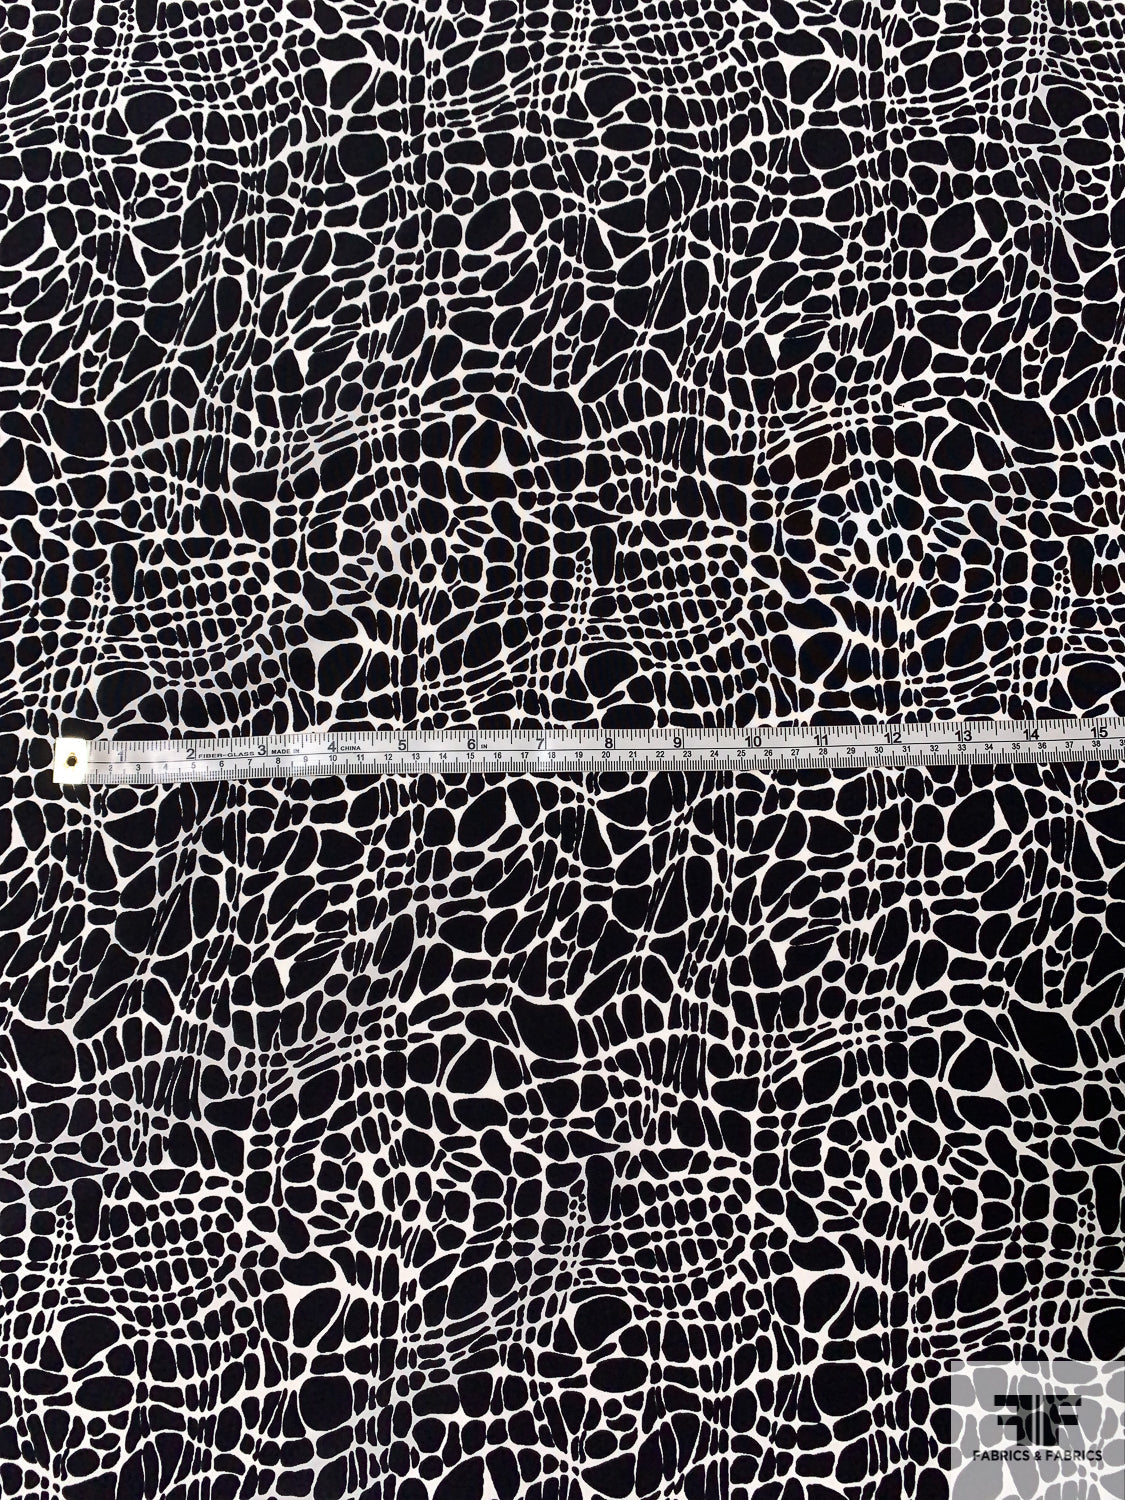 Reptile Printed Silk Crepe de Chine - Black / Off-White